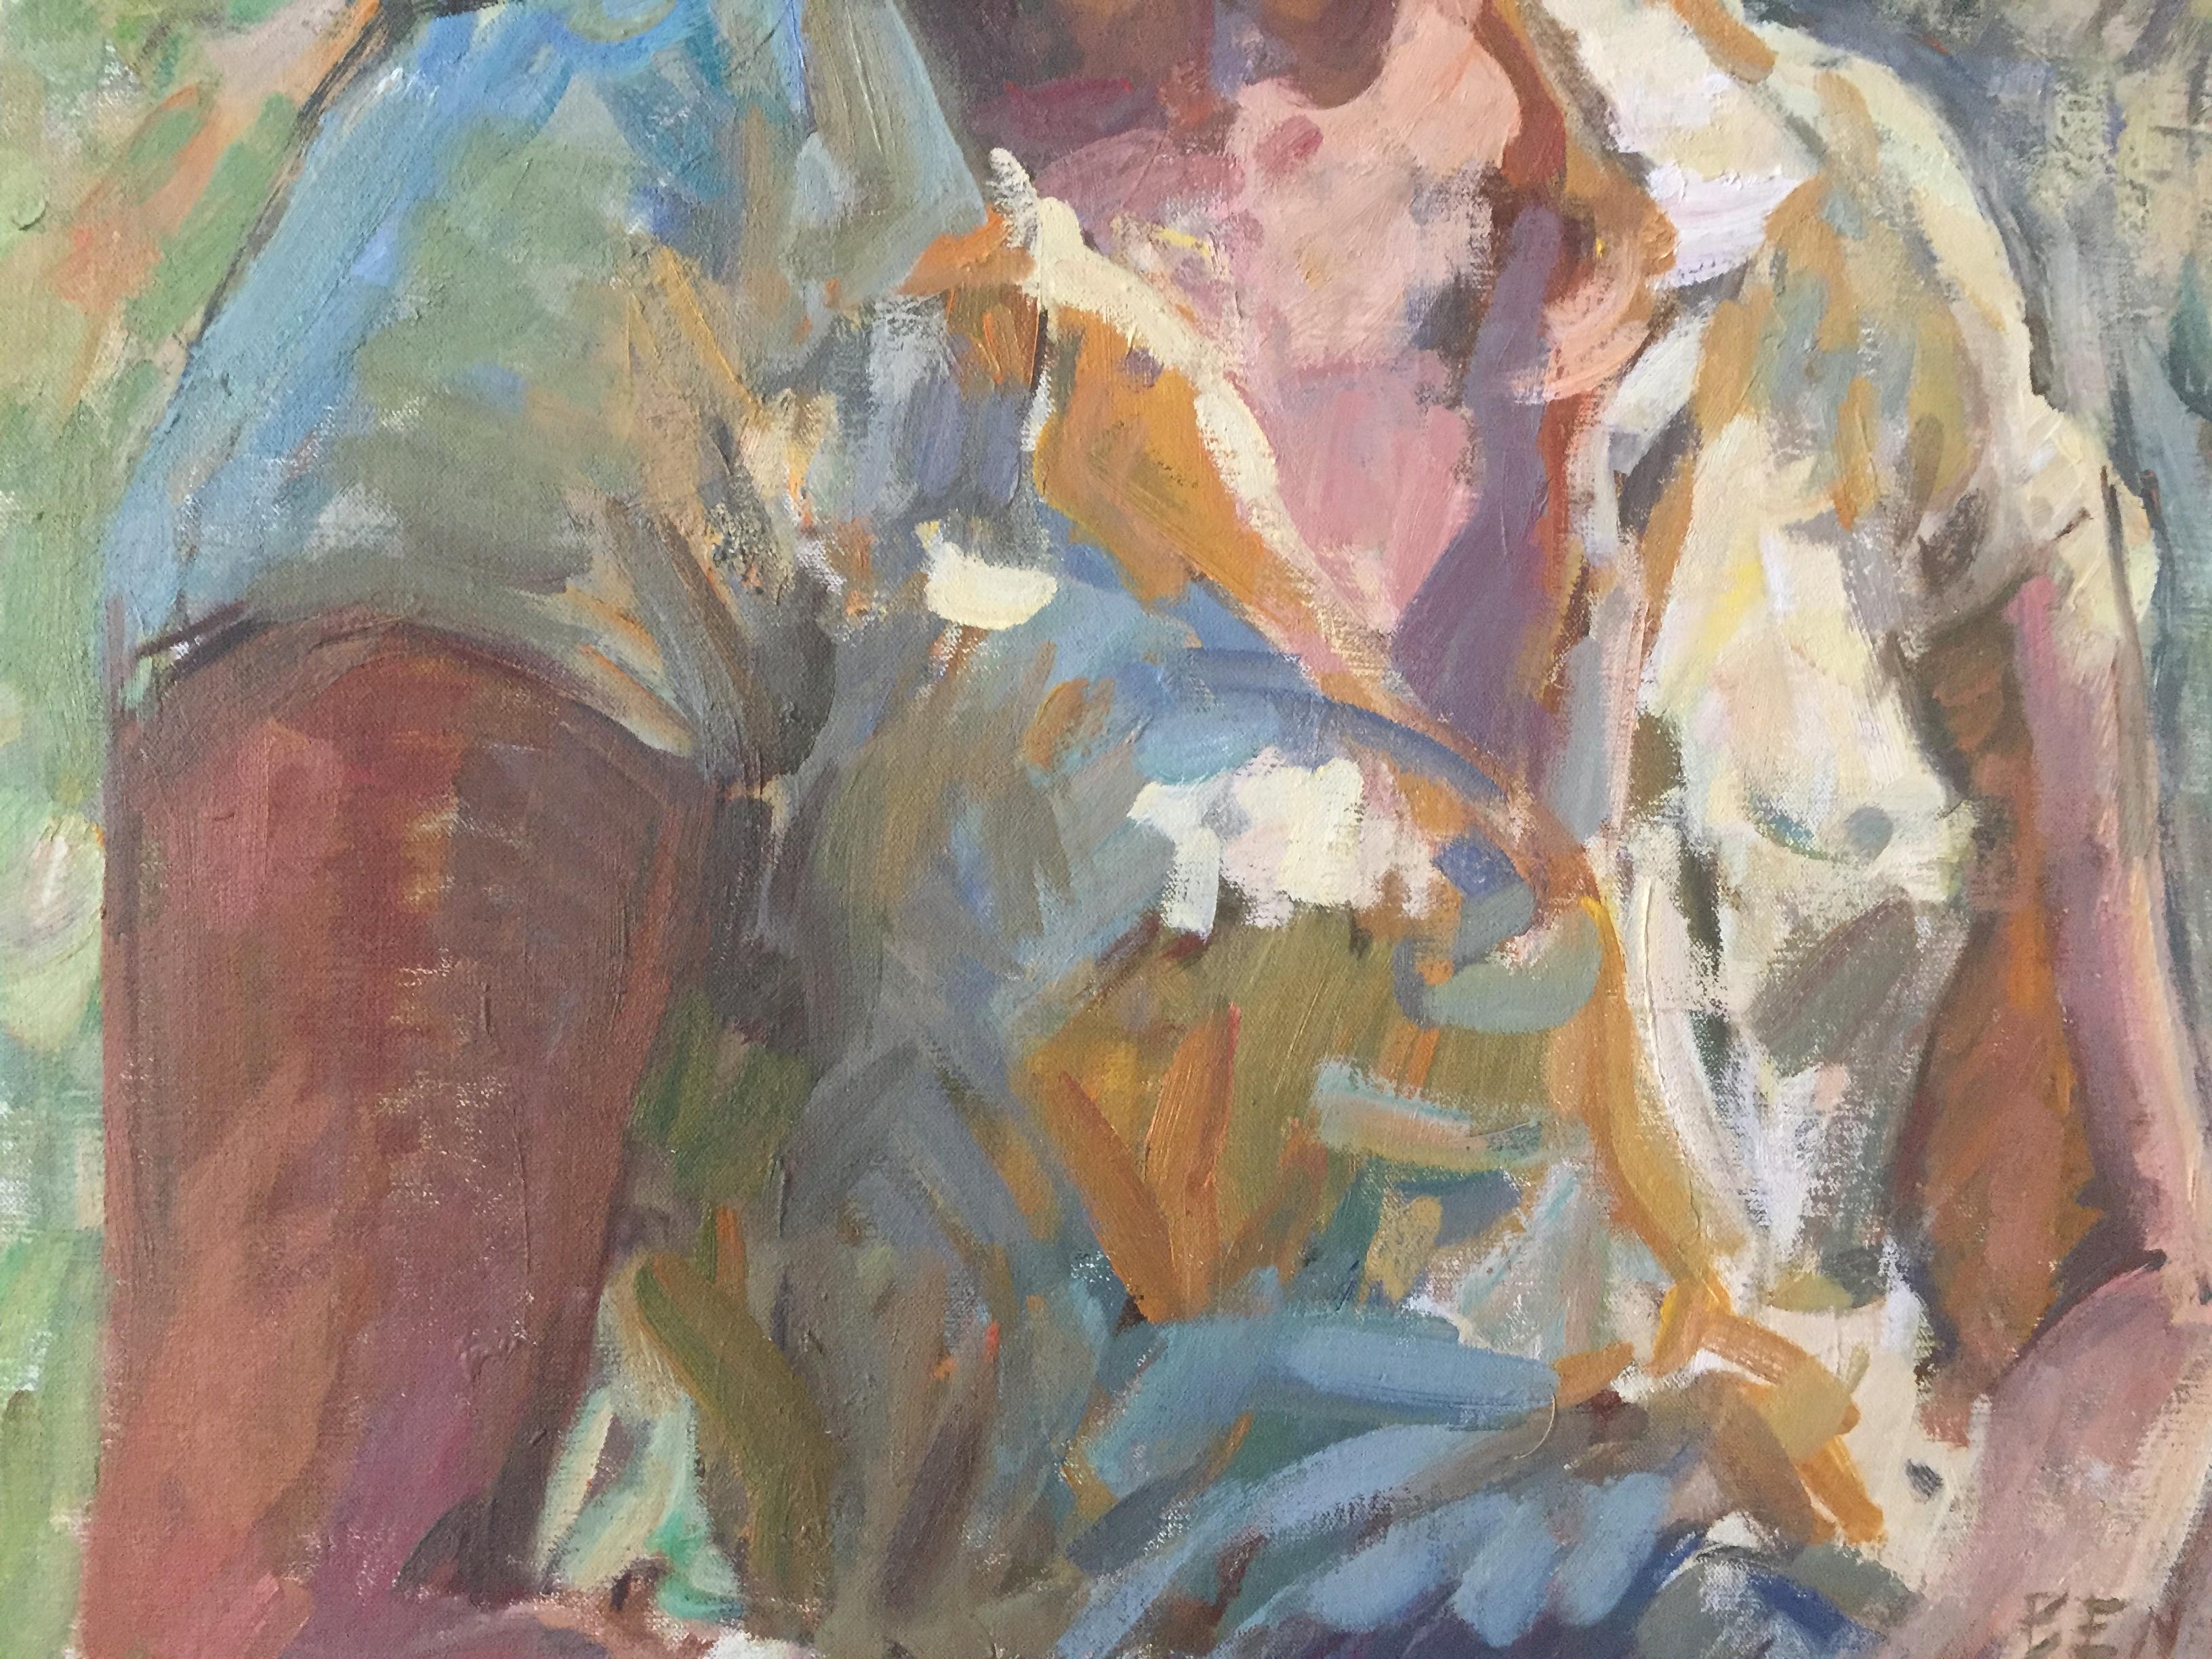 Ein Ölgemälde auf Leinwand, das eine Frau im Freien zeigt. Ein kurviger Baum in der Nähe rahmt ihr Porträt ein. Sie trägt einen gelben, kurzärmeligen Button-down und einen passenden Schal im Haar. 

Gerahmte Abmessungen: 41,43 x 33,56 Zoll

Ben